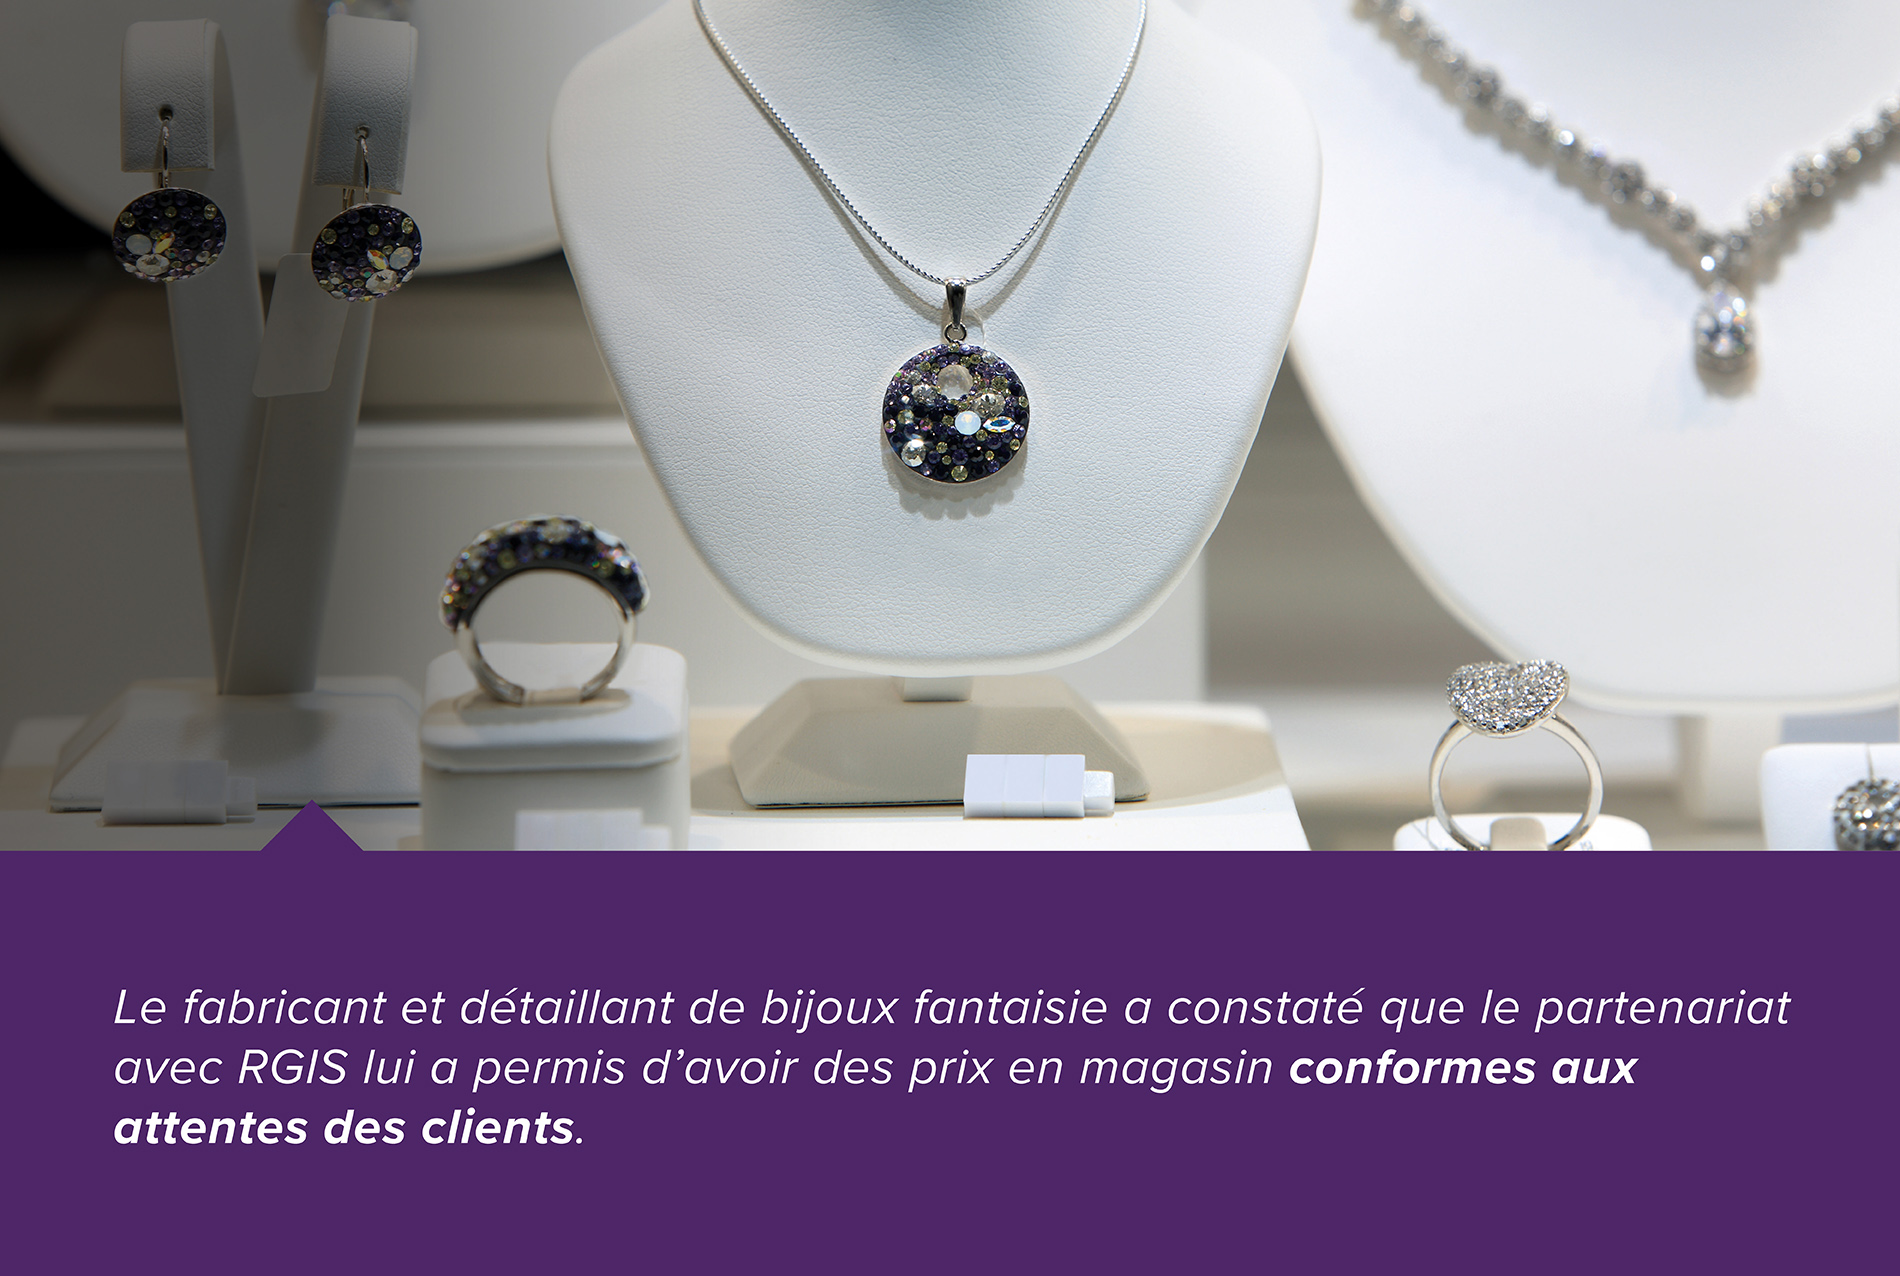 Le fabricant et détaillant de bijoux fantaisie a constaté que le partenariat avec RGIS lui a permis d'avoir des prix en magasin conformes aux attentes des clients